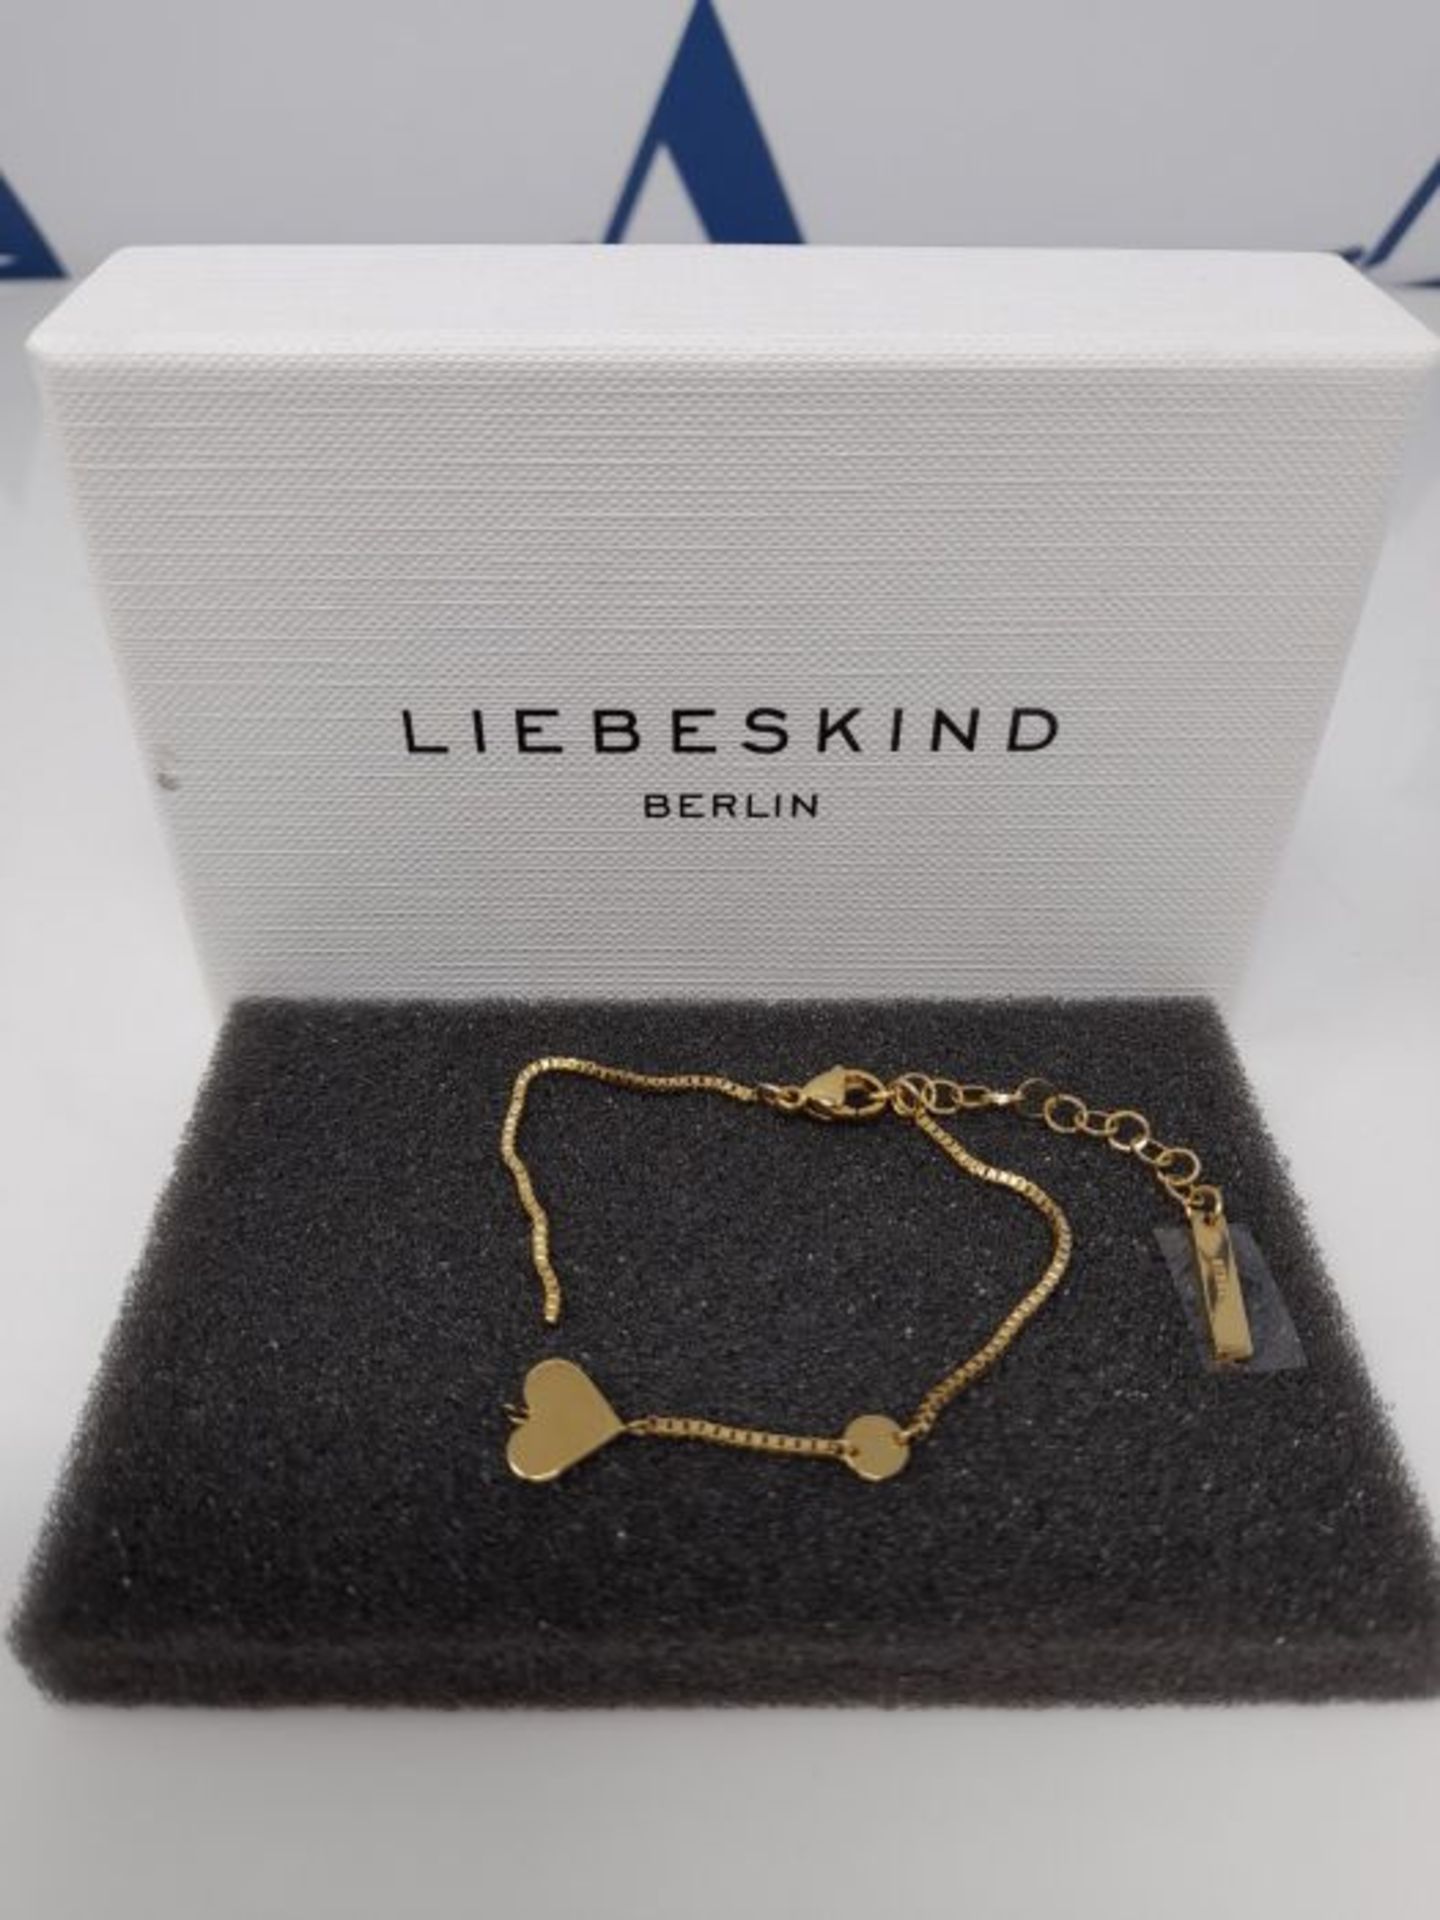 [CRACKED] Liebeskind LJ-0510-B-20 Damen Armband Herz Edelstahl Gold 20 cm - Image 2 of 3